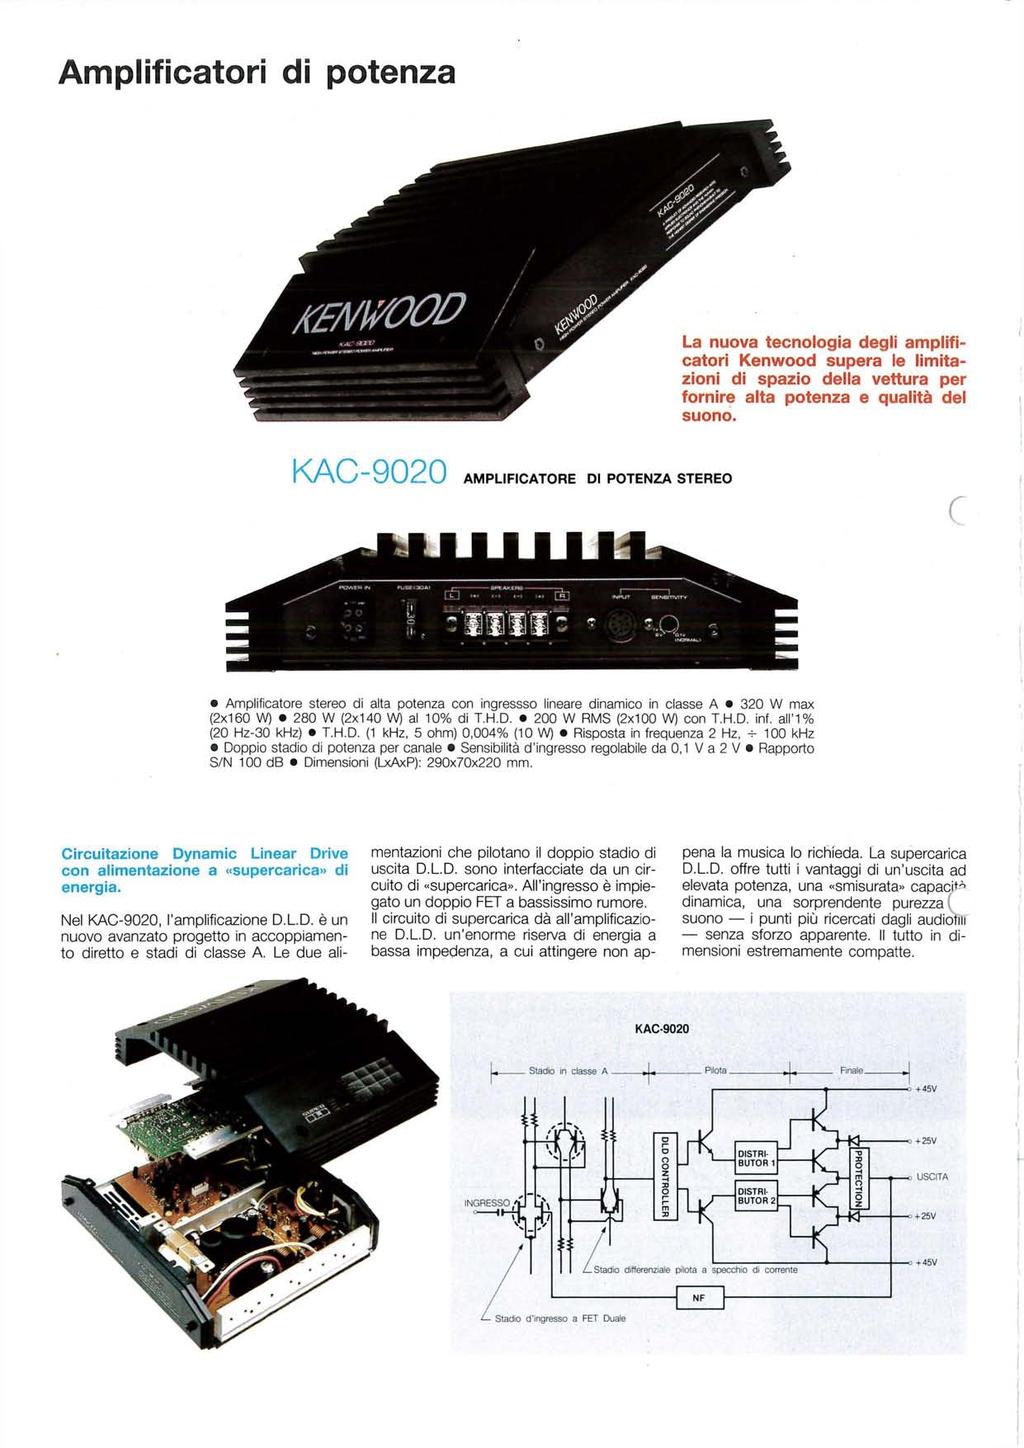 Amplificatori di potenza KAC-9020 AMPLIFICATORE DI POTENZA STEREO ( B CD -.